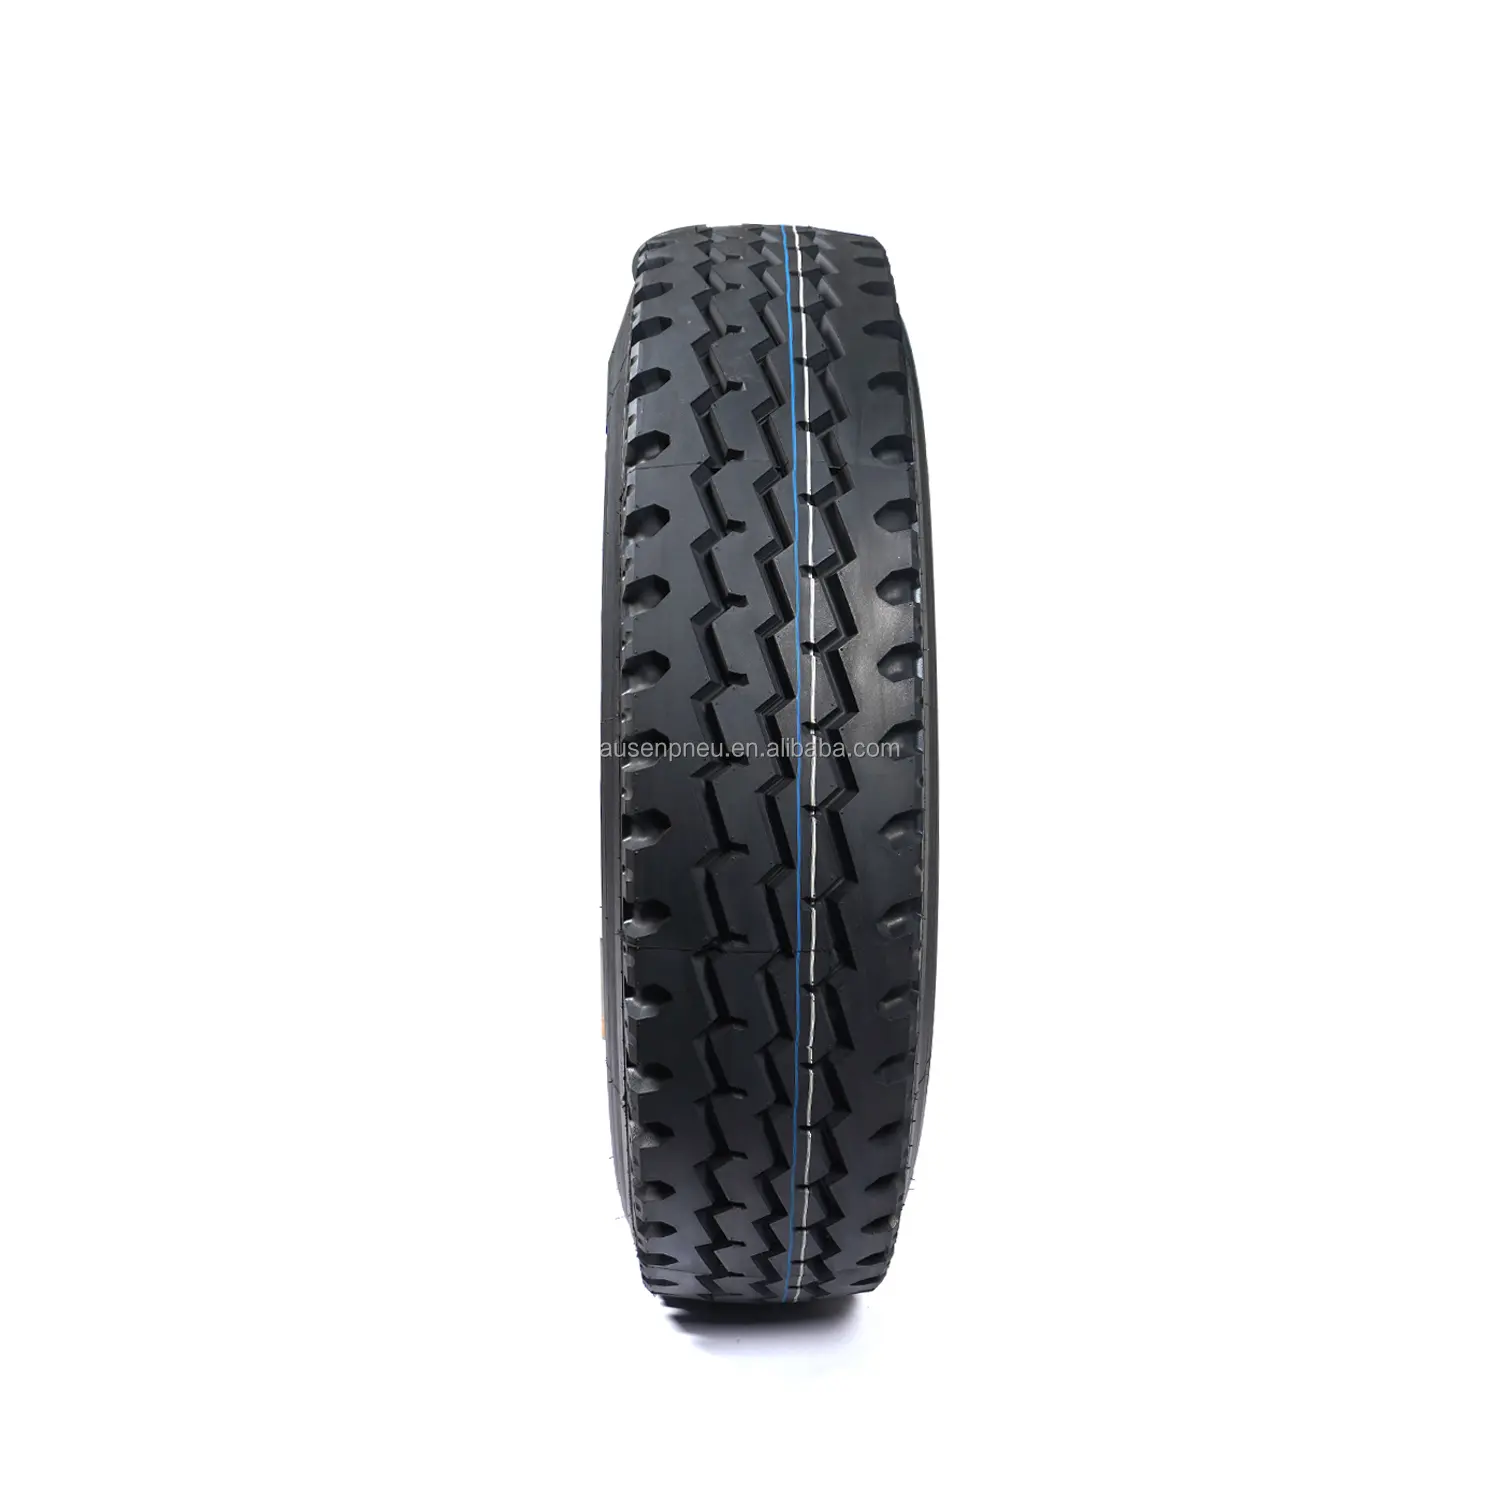 Neumáticos de camión TBR 8.25R16 8.25R20 9.00R20 10.00R20 neumáticos pesados venta directa de fábrica de China